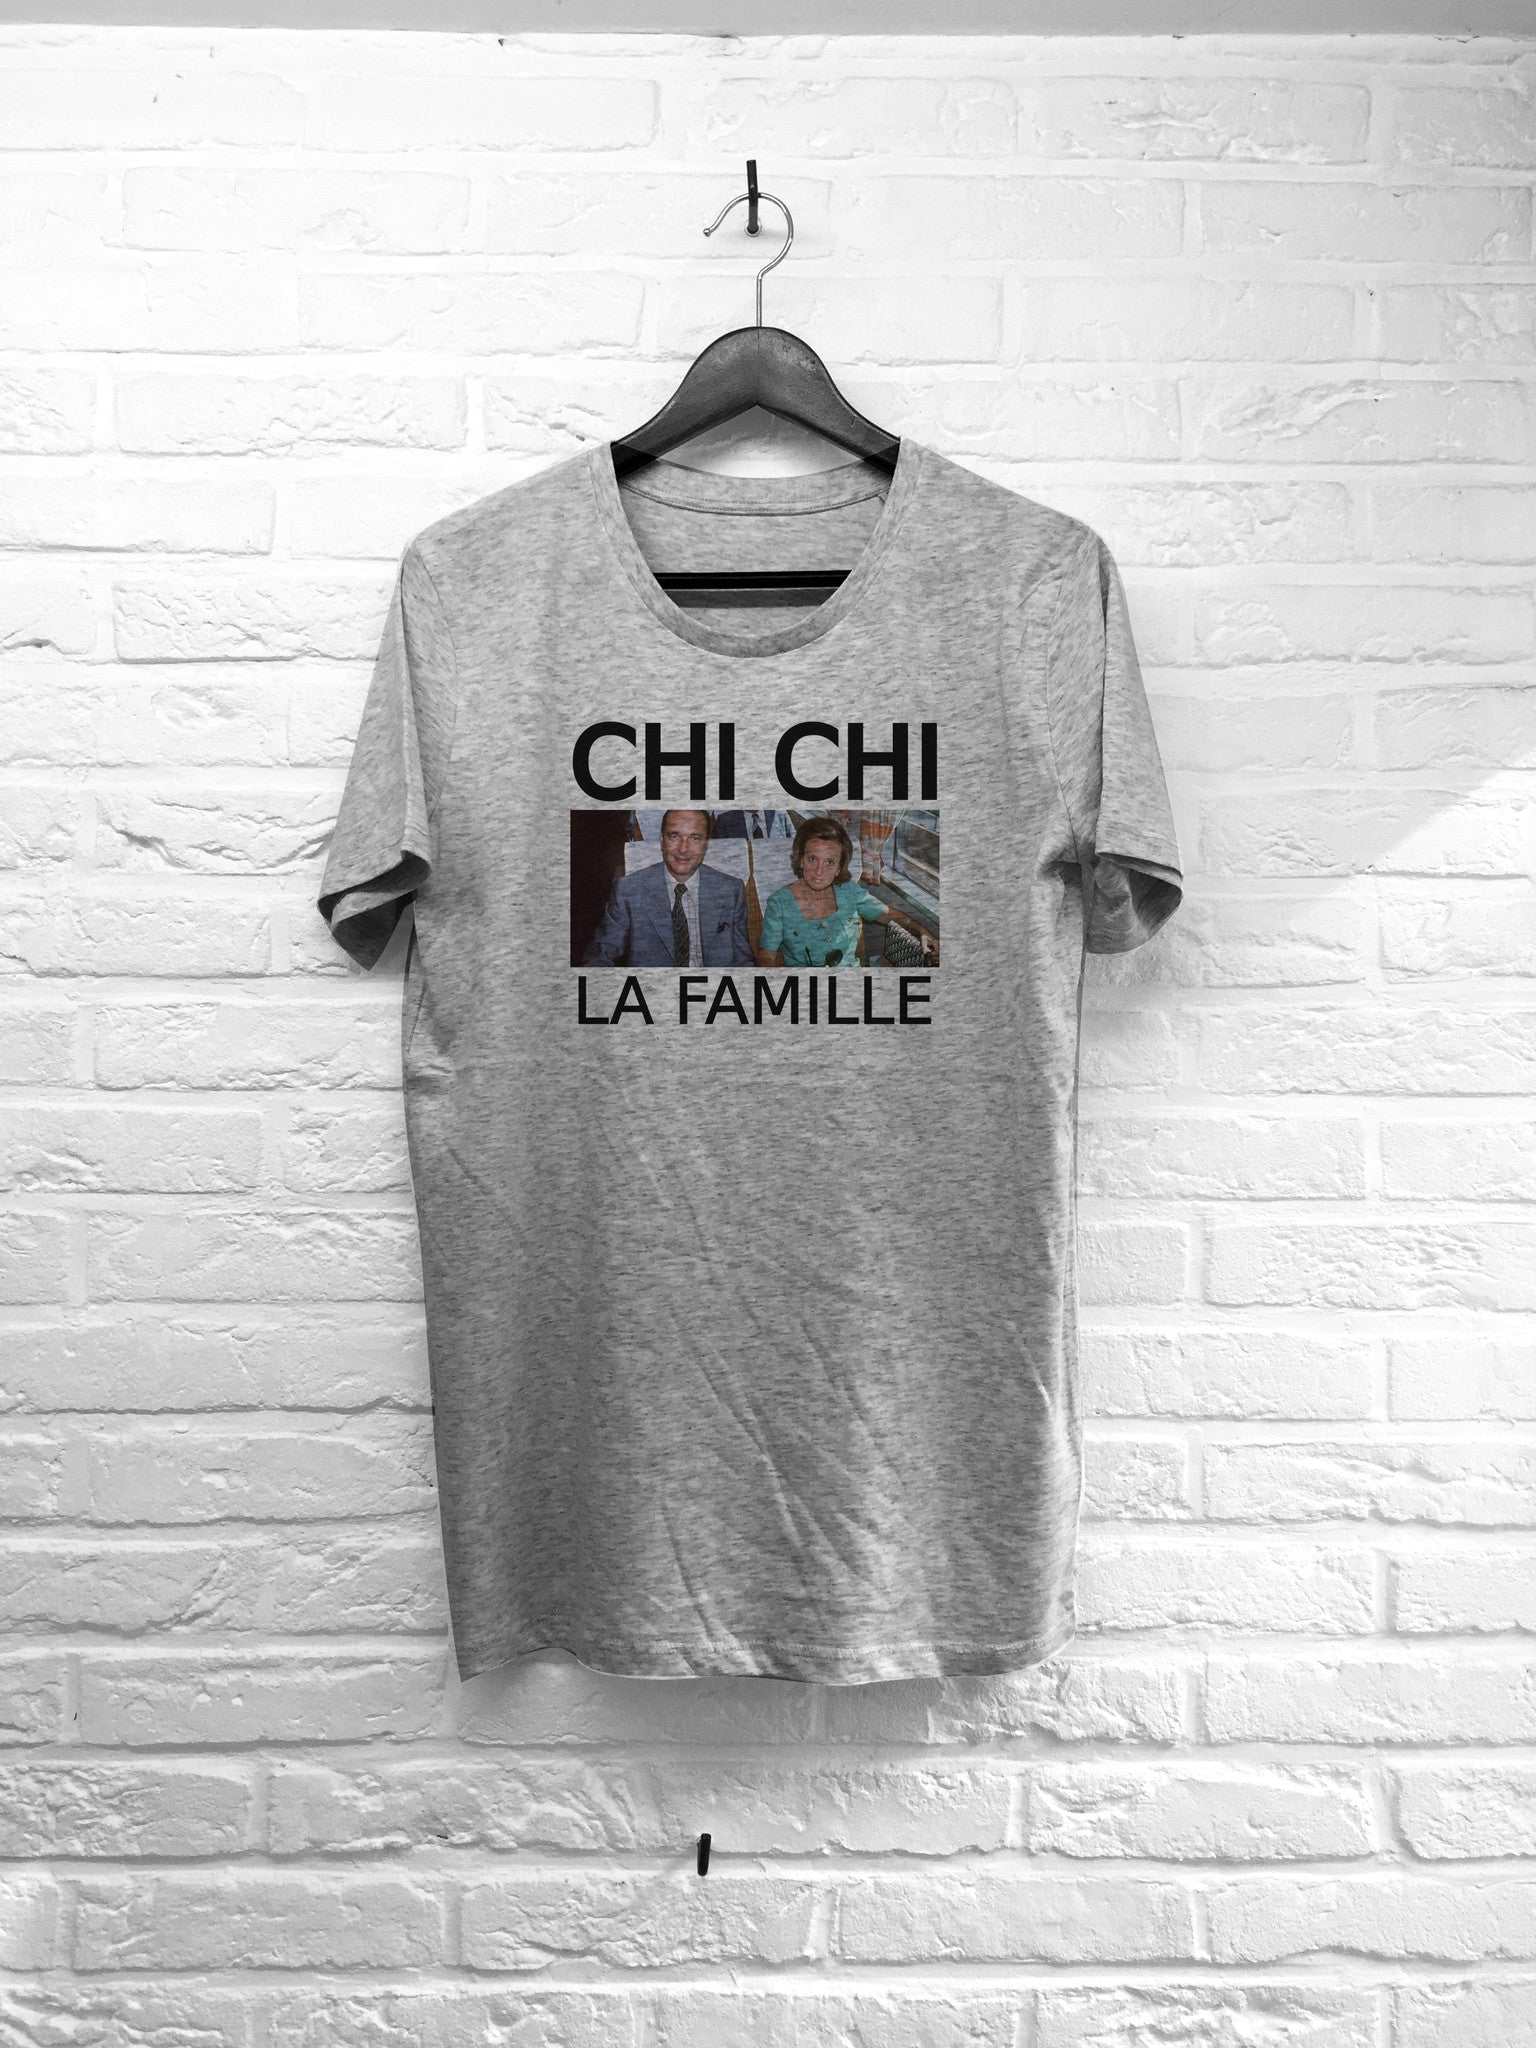 Chichi la famille-T shirt-Atelier Amelot